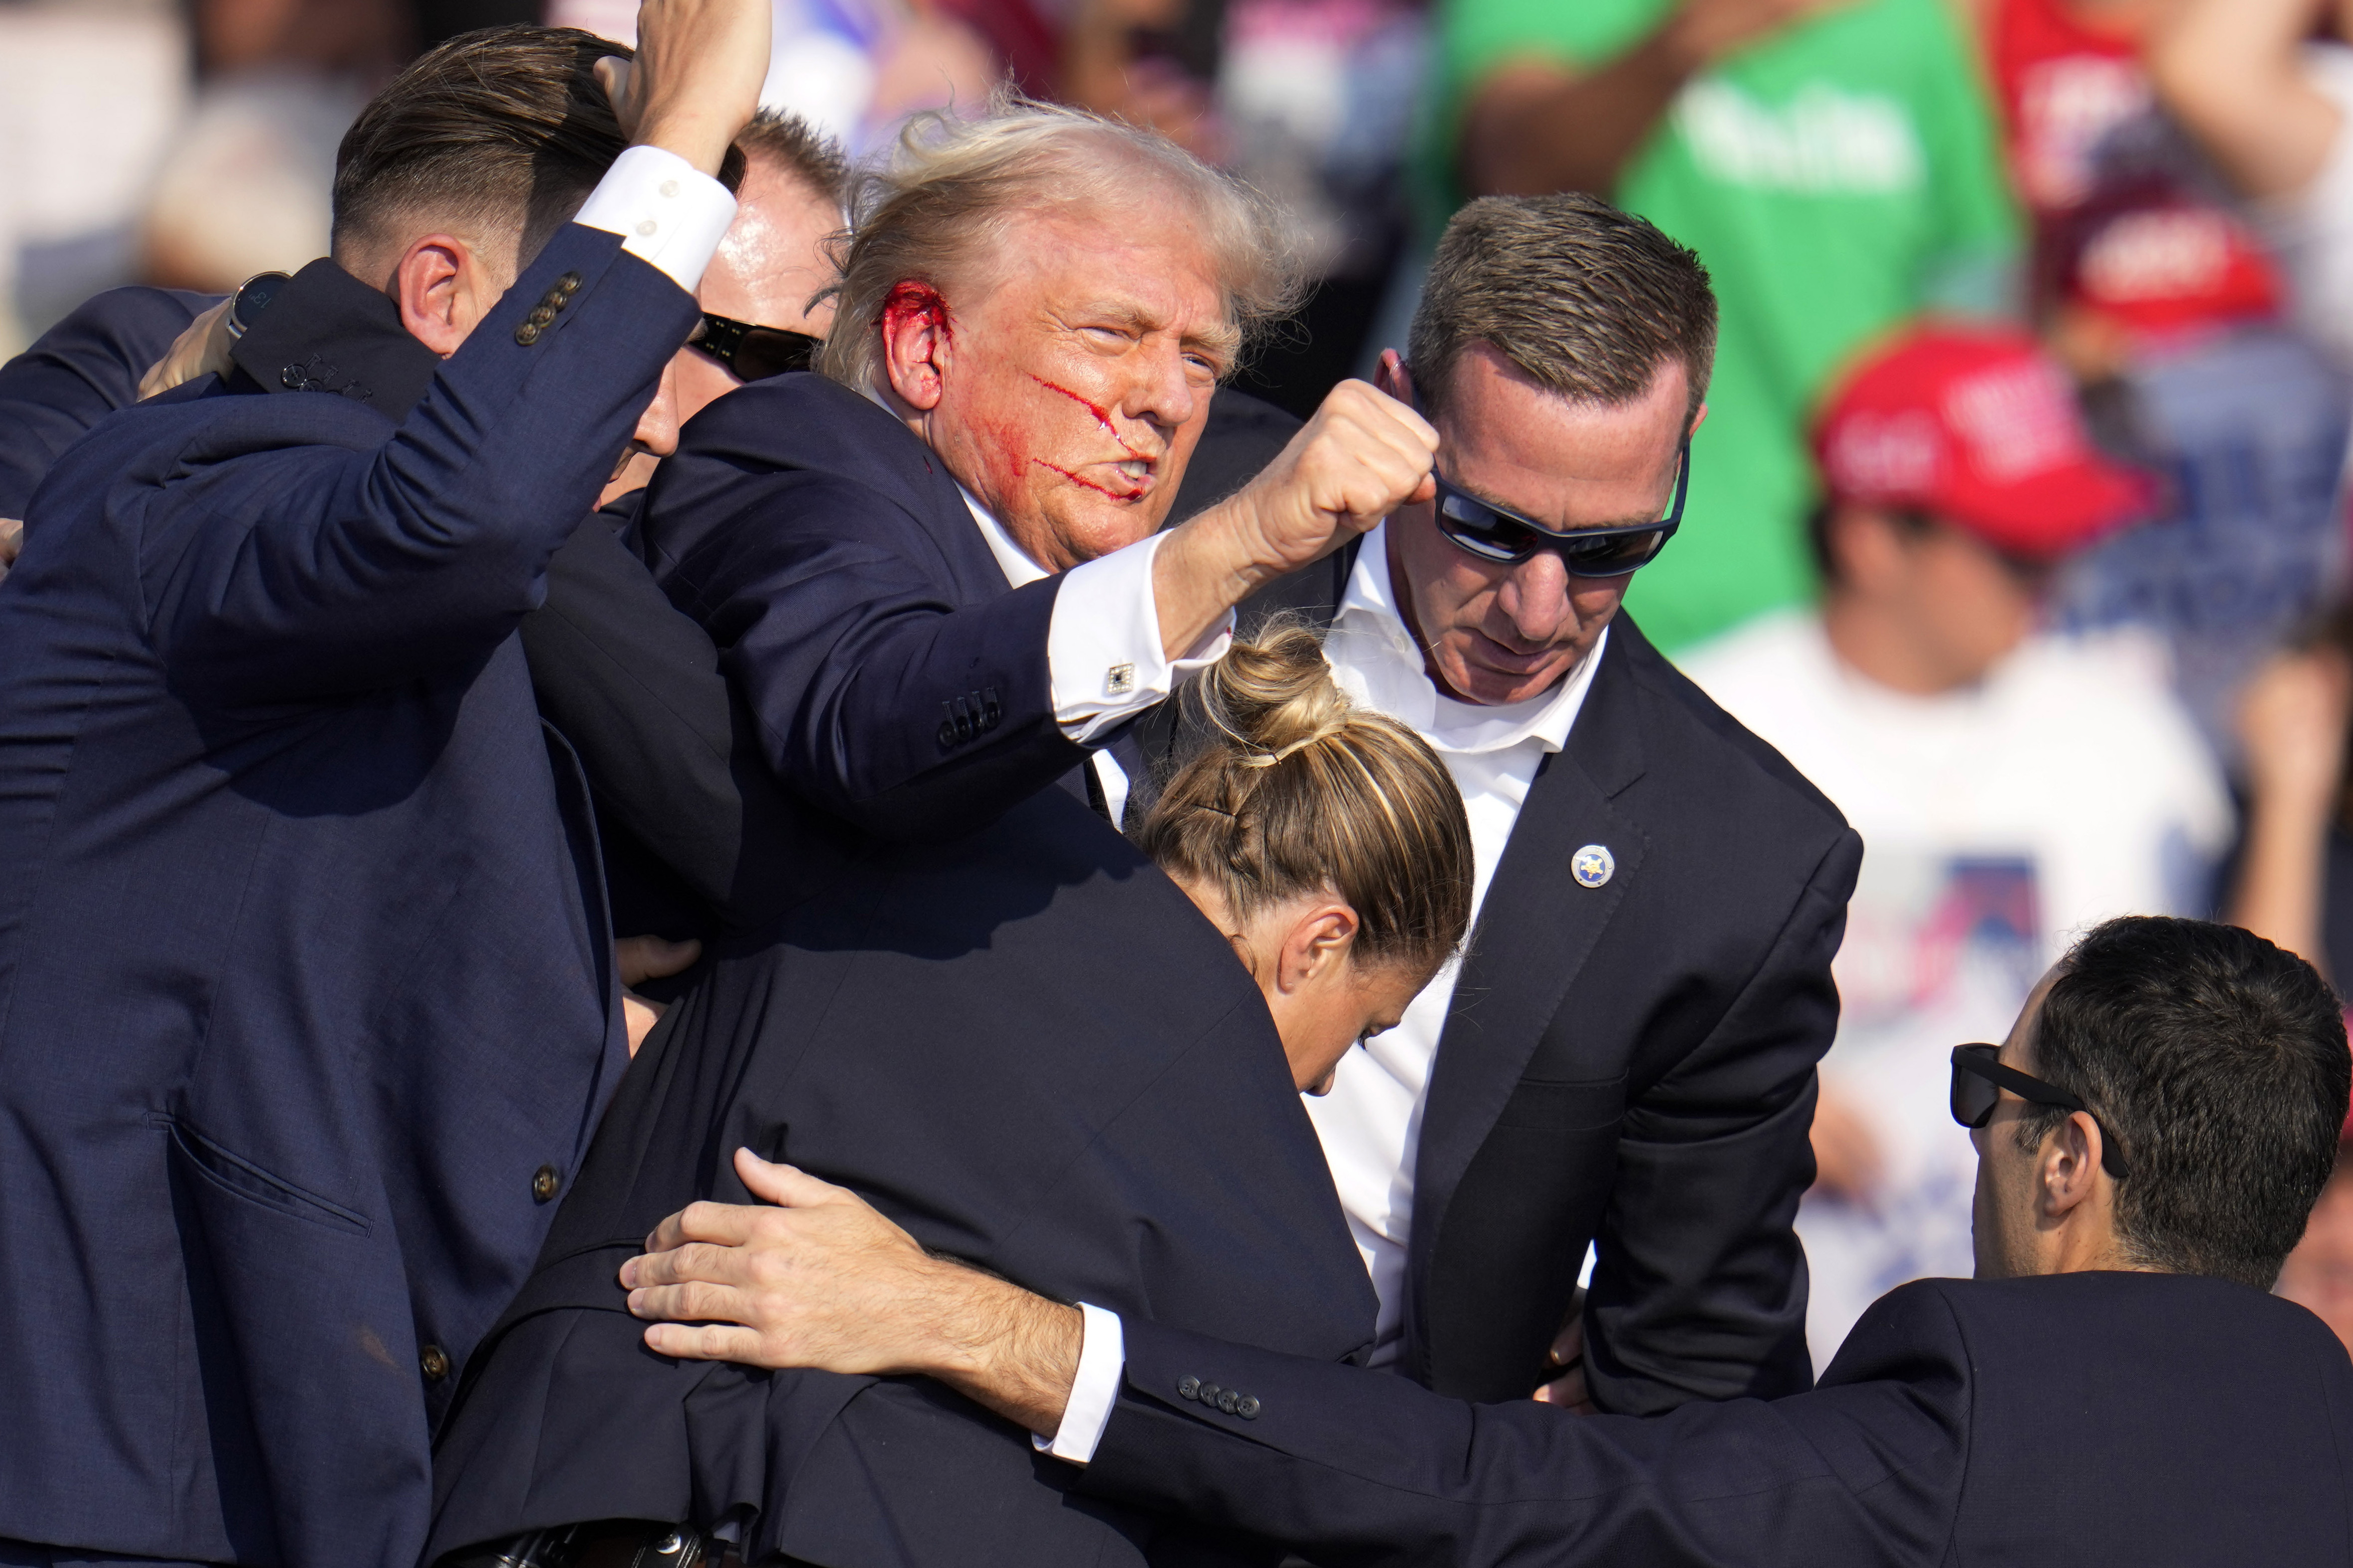 El candidato presidencial republicano y expresidente Donald Trump es ayudado a salir del escenario por el Servicio Secreto de Estados Unidos.